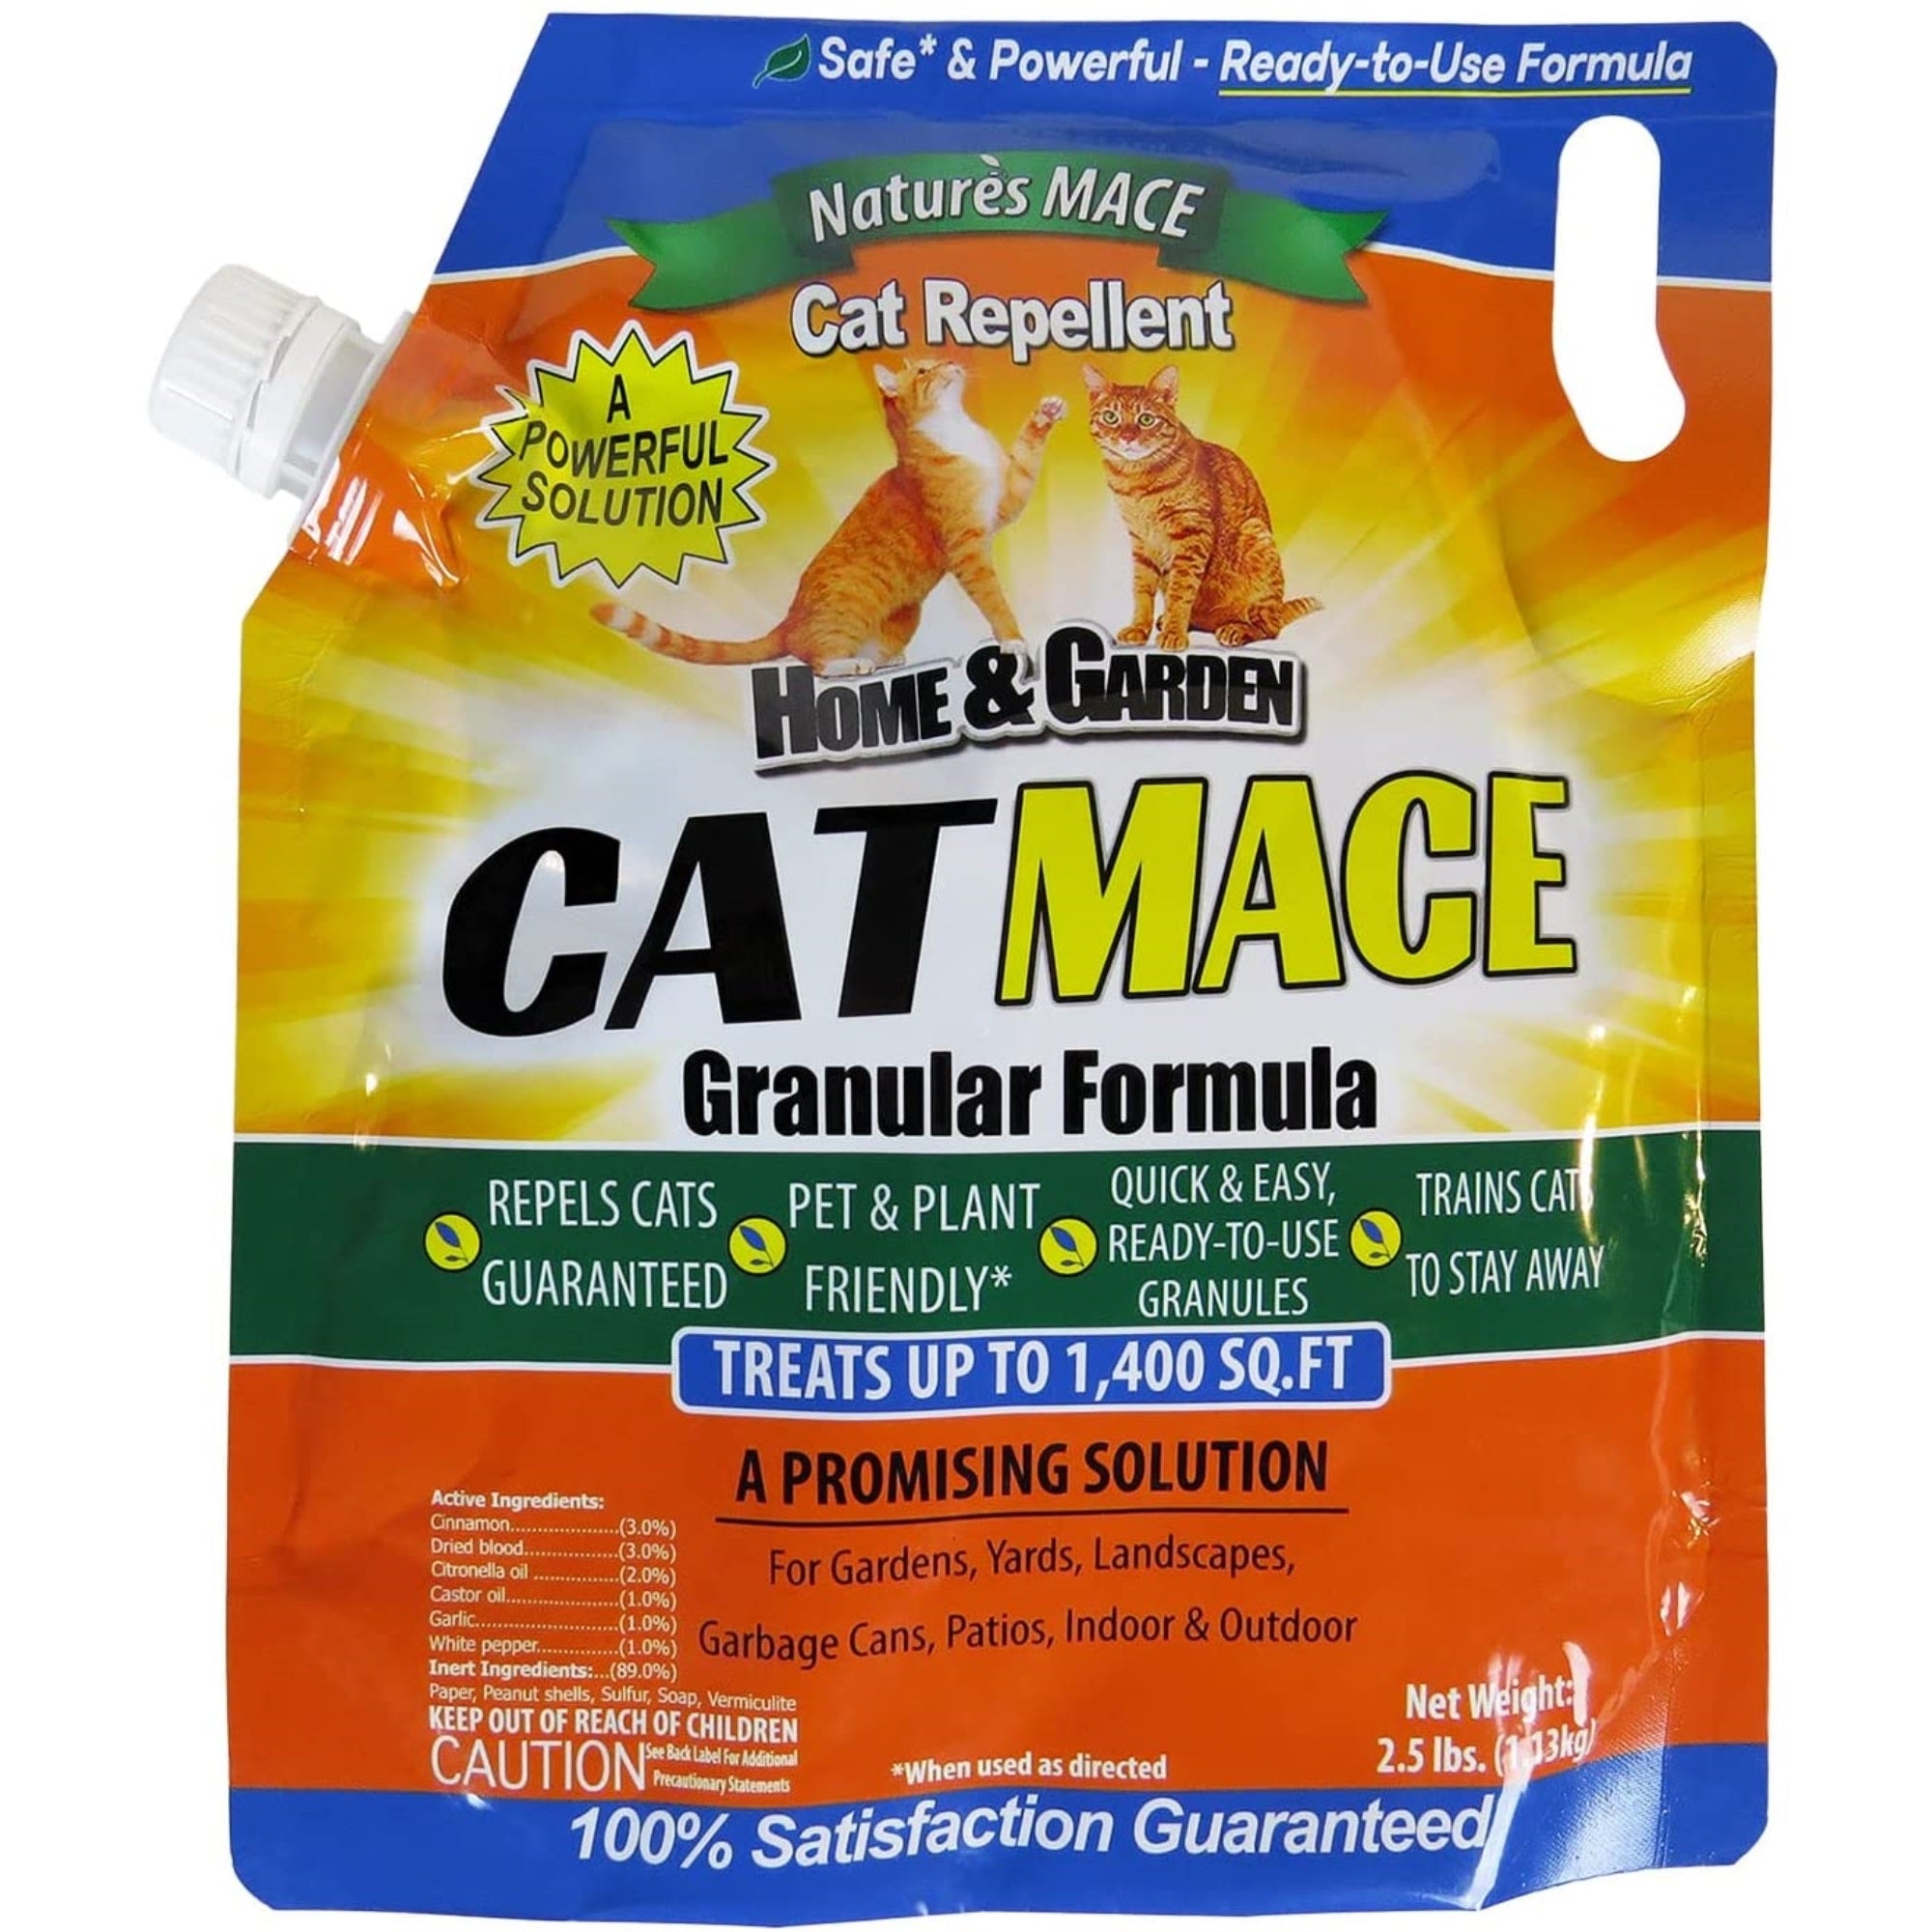 Nature's Mace Granular Cat Repellent, 2.5# treats 1400 sq ft